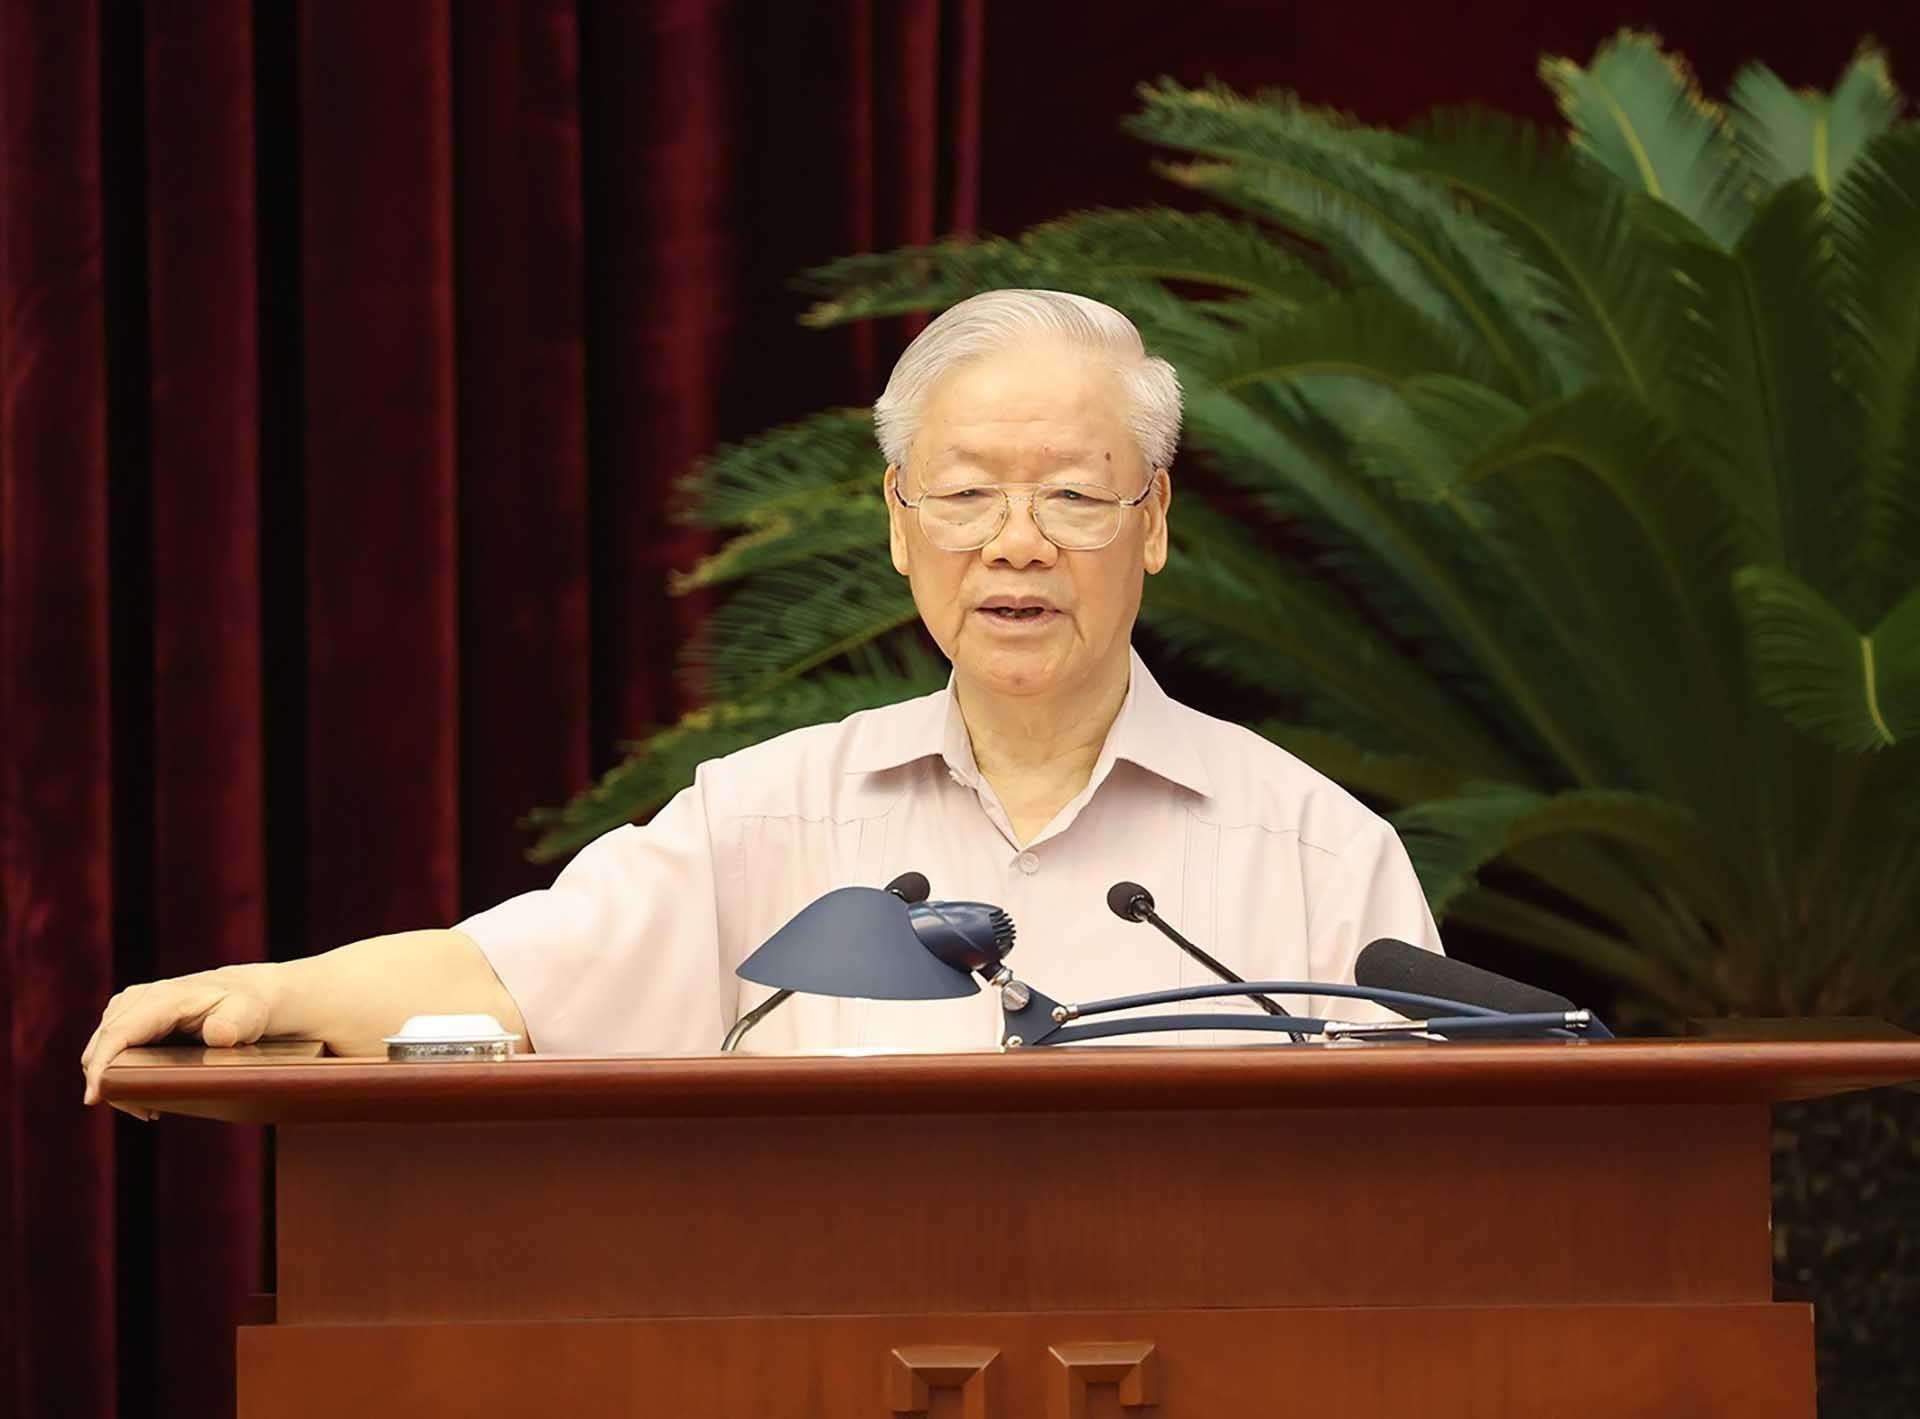 Tổng Bí thư Nguyễn Phú Trọng phát biểu kết luận Hội nghị. (Nguồn: TTXVN)